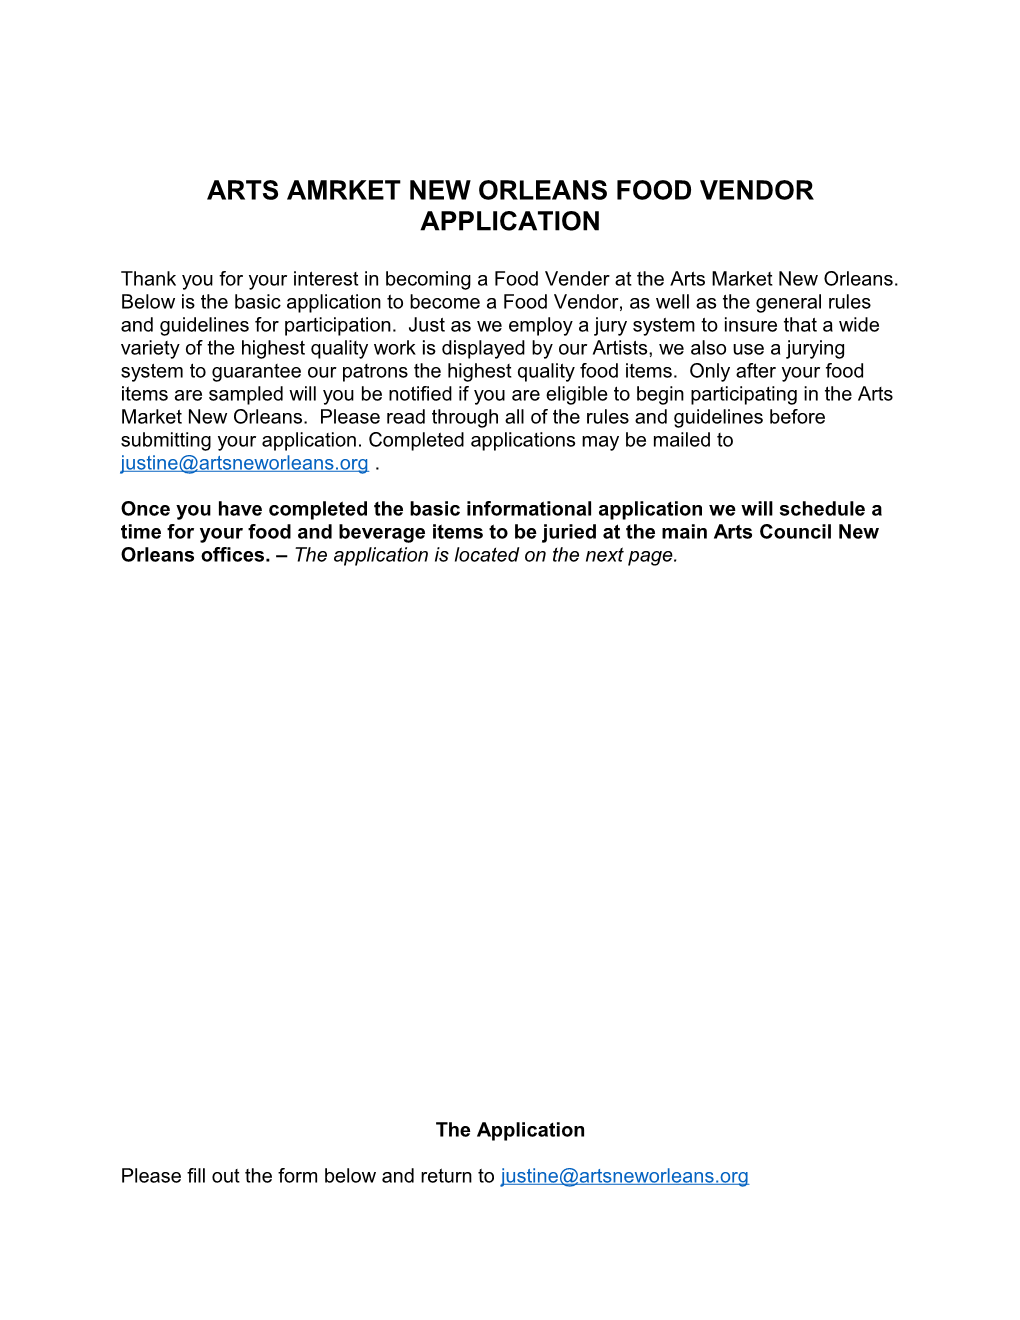 Arts Amrket New Orleans Food Vendor Application